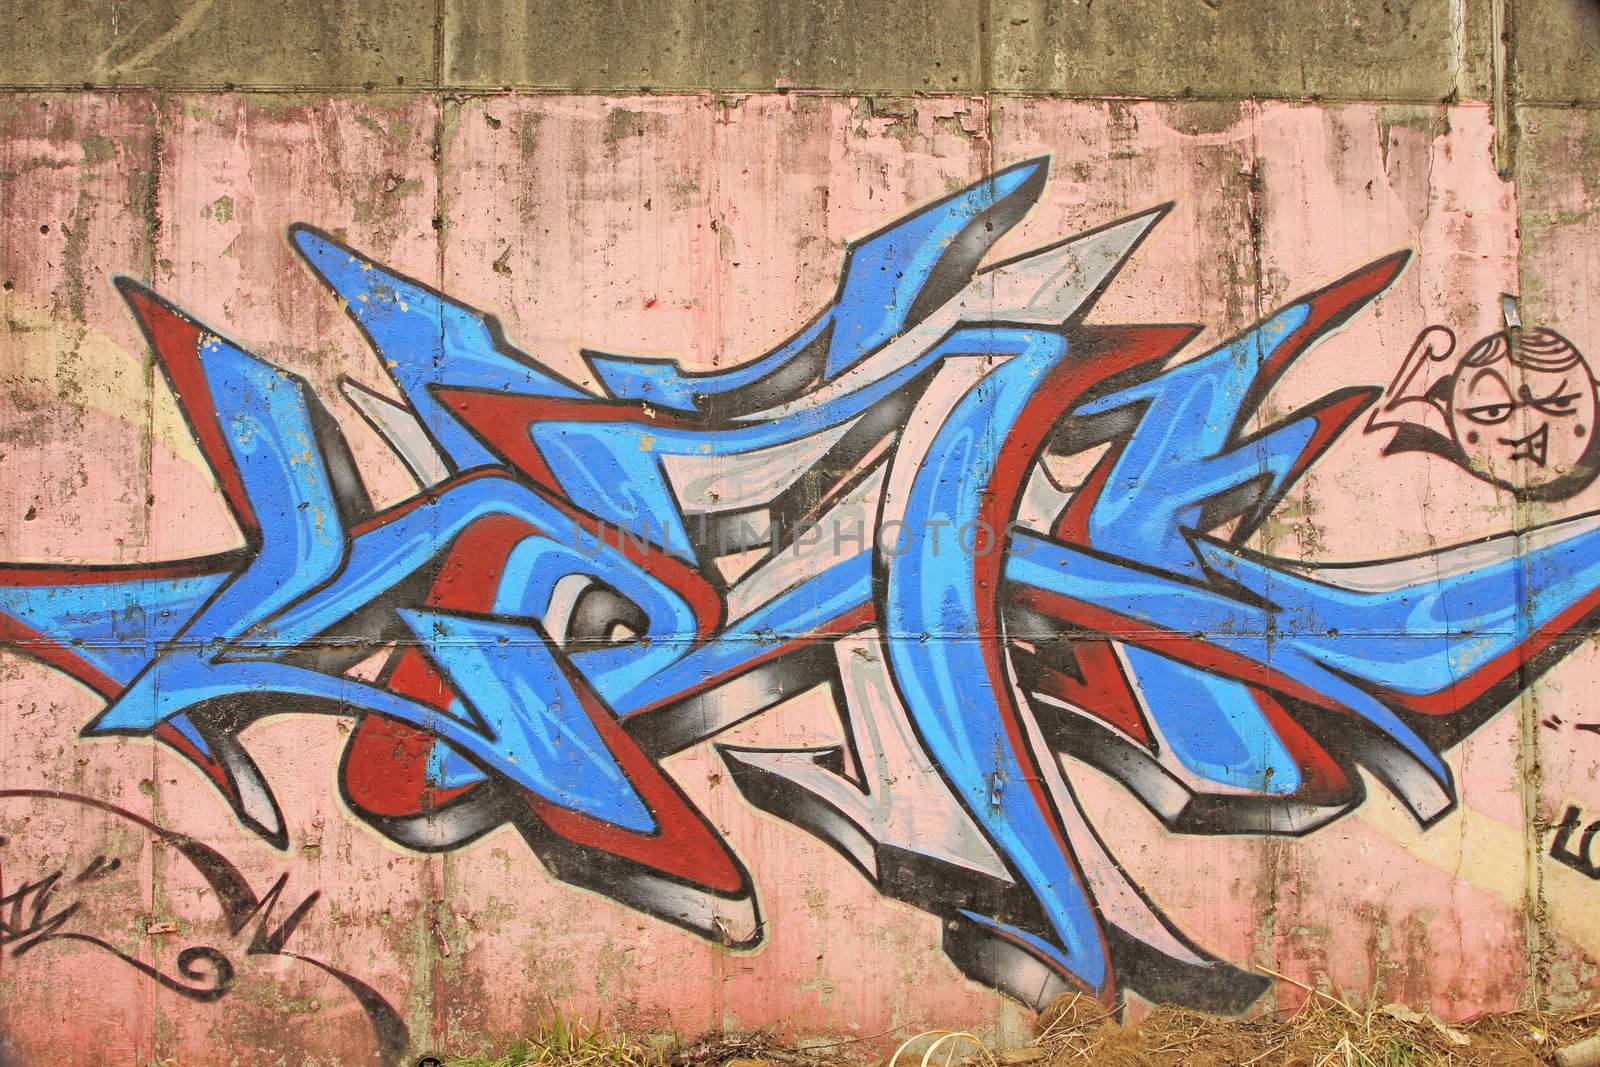 Urban graffiti painted in the wall of Anyang river bridge in Korea.